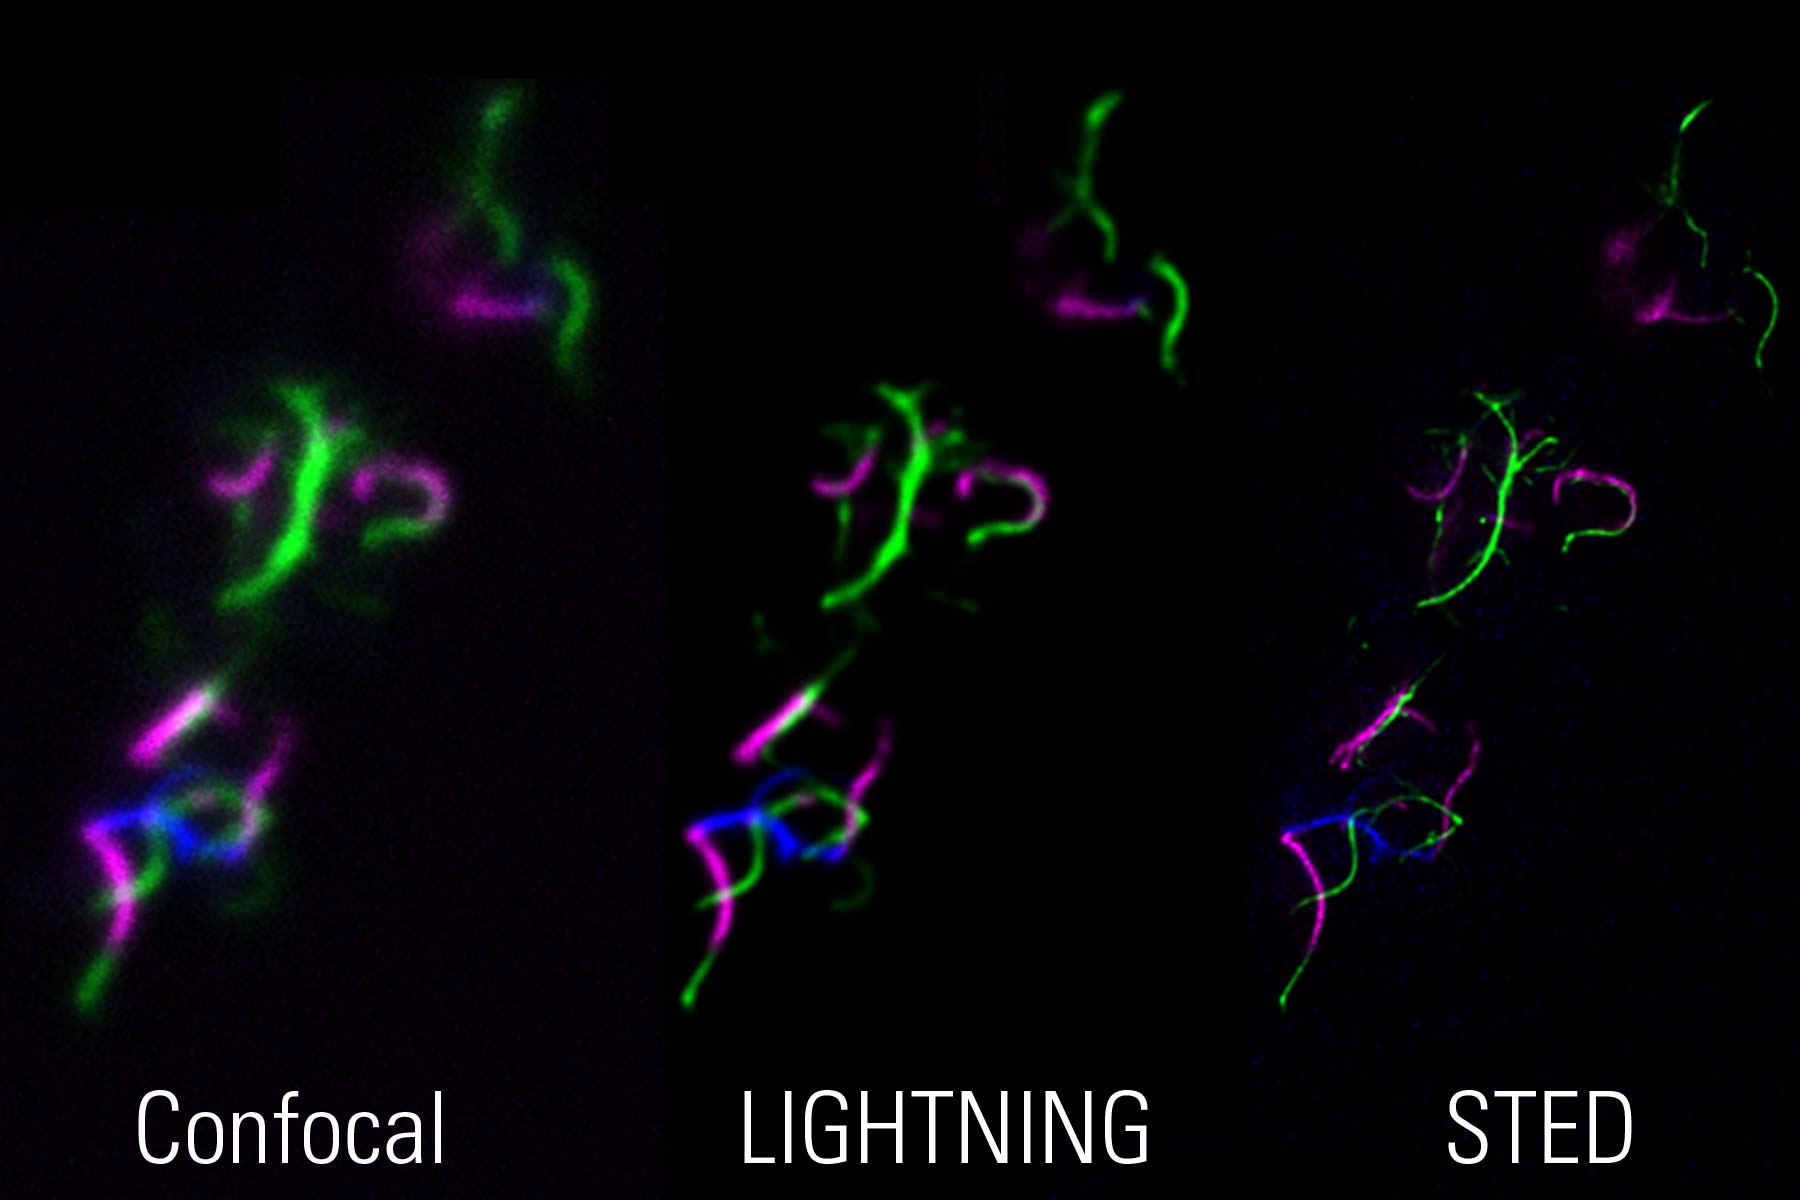 STED の微生物学アプリケーション: 共焦点、LIGHTNING、STED イメージングによって可視化されたバクテリア鞭毛の三重染色画像。補完的手法を用いることで、試料の調査と検証を可能にする。 試料提供: Marc Erhardt 博士、Humboldt-Universität、ドイツ・ベルリン。